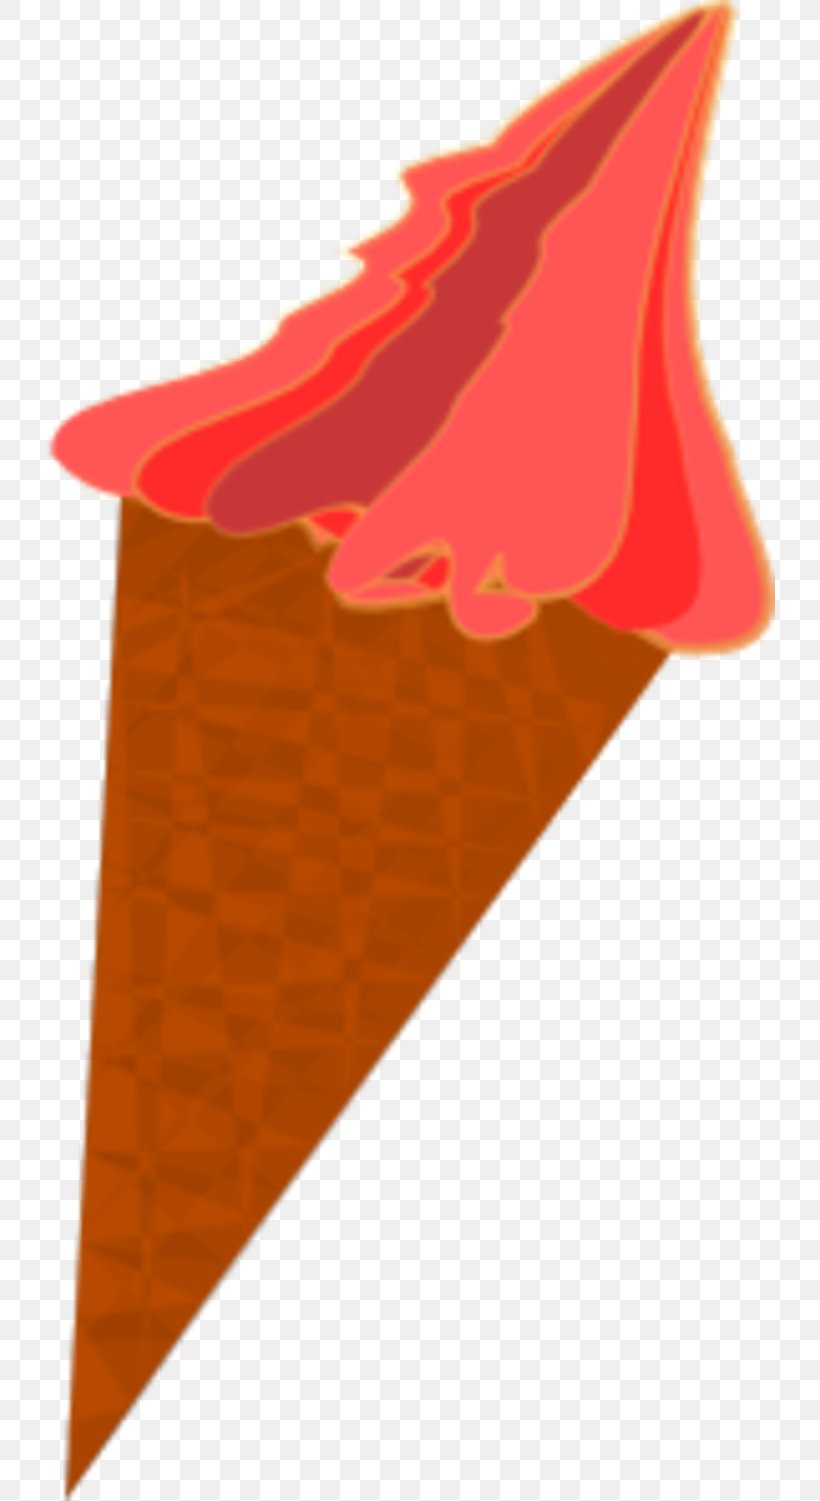 Ice Cream Cones Chocolate Ice Cream Snow Cone, PNG, 730x1501px, Ice Cream, Berry, Chocolate, Chocolate Ice Cream, Cream Download Free